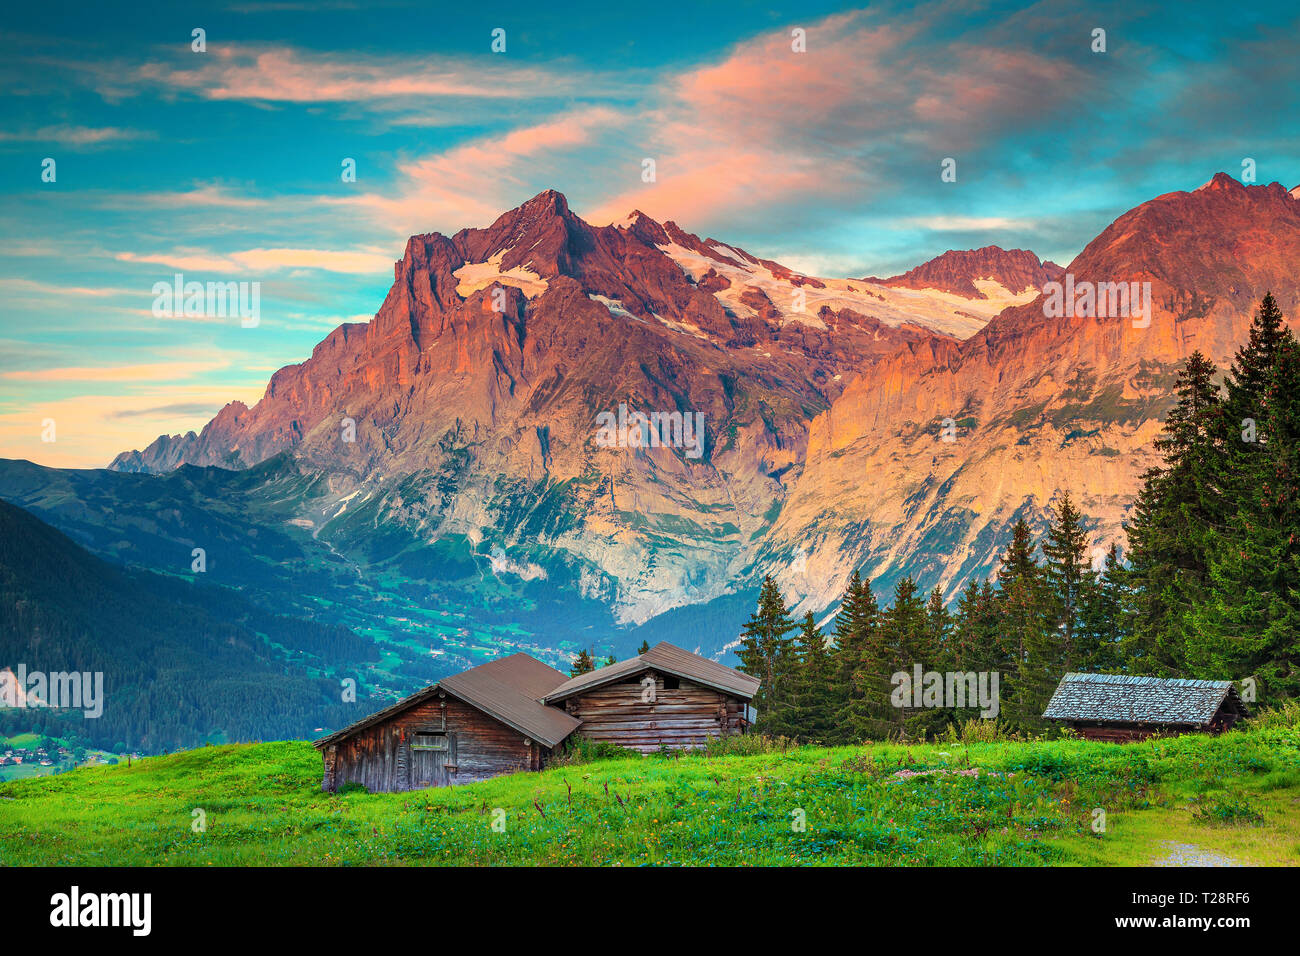 La randonnée fantastique et de déplacement, rural alpin suisse place avec maisons en bois et de hautes montagnes en arrière-plan, Grindelwald, Oberland Bernois, SWI Banque D'Images